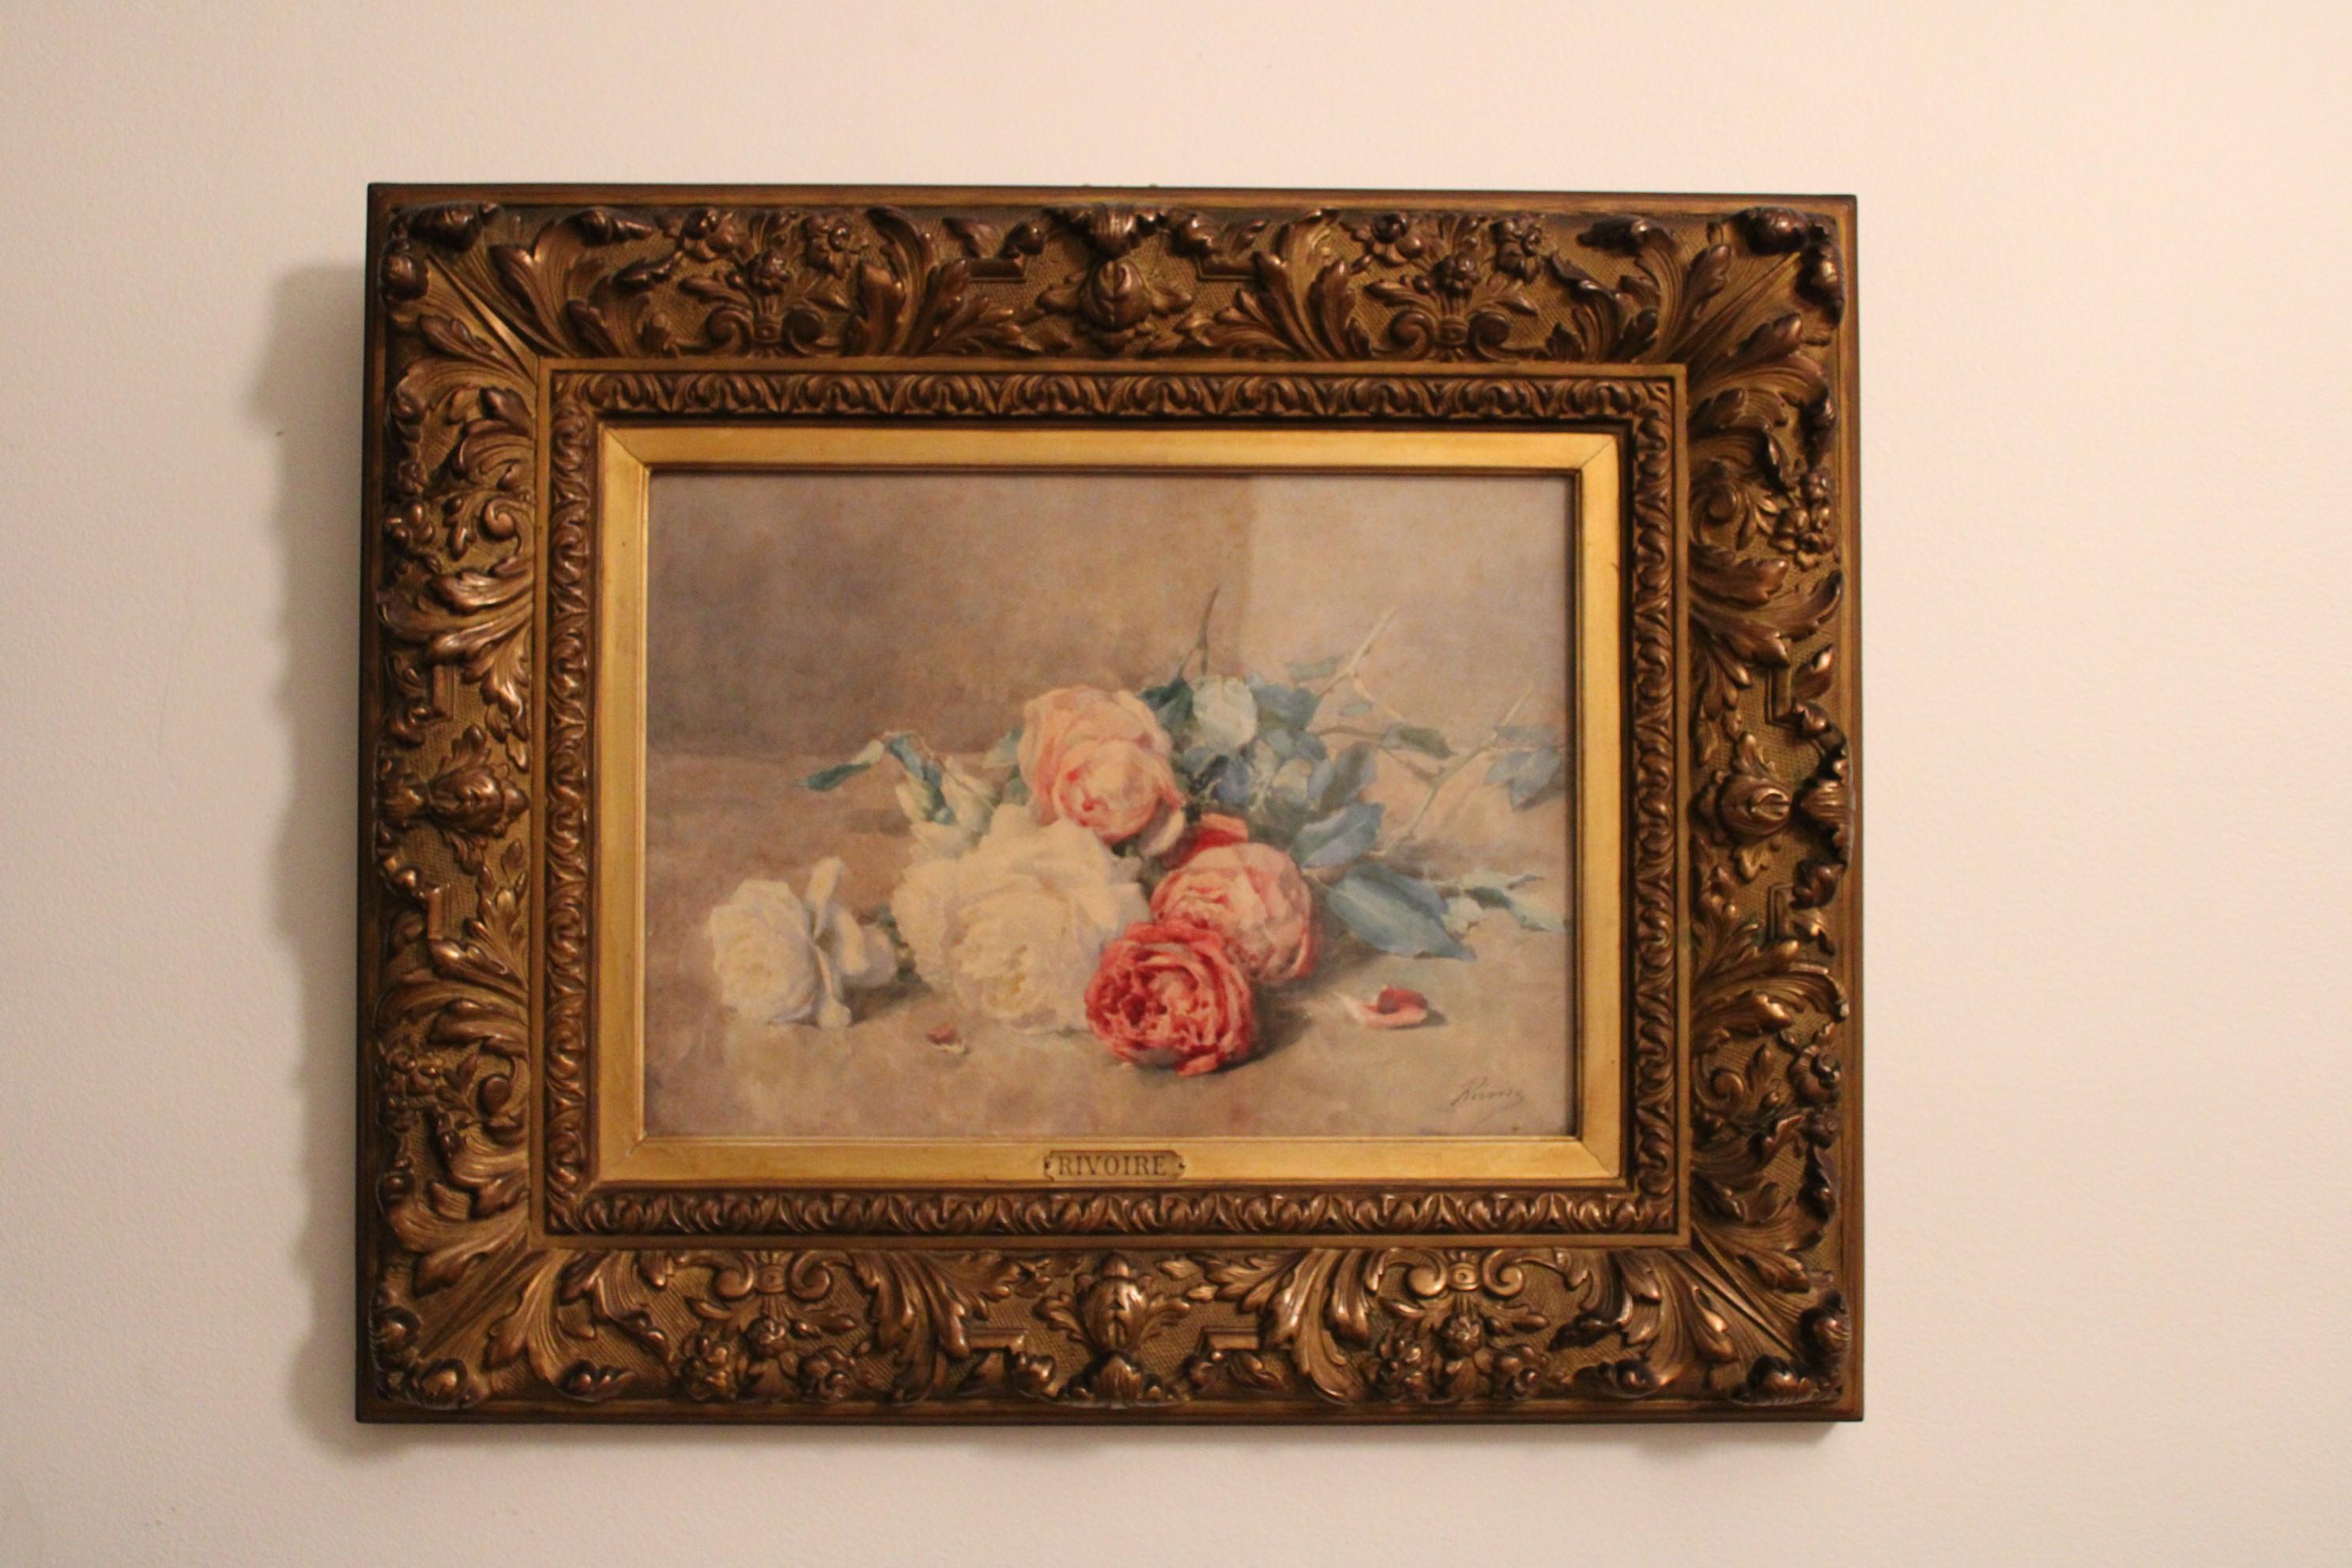 Aquarelle sur papier de François Rivoire (1842-1919)
Bouquet de fleurs
Signé en bas à droite.

Taches sur le papier (voir photos, en haut à droite)

Dimensions du cadre : 62 x 51 x 5 cm
Dimensions de la peinture : 42 x 30 cm.